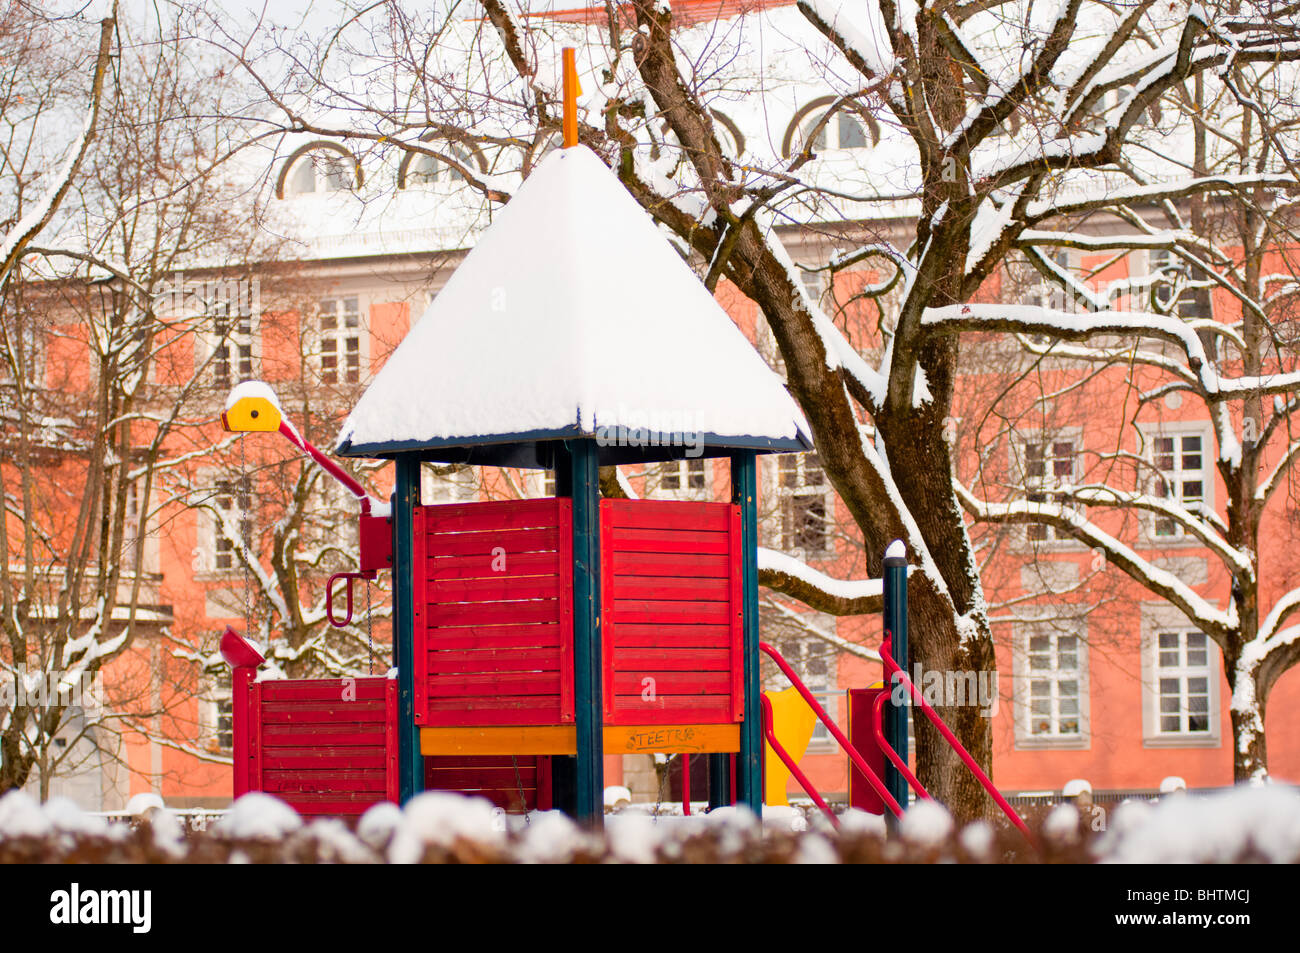 Children's playground in a snowy Munich Stock Photo